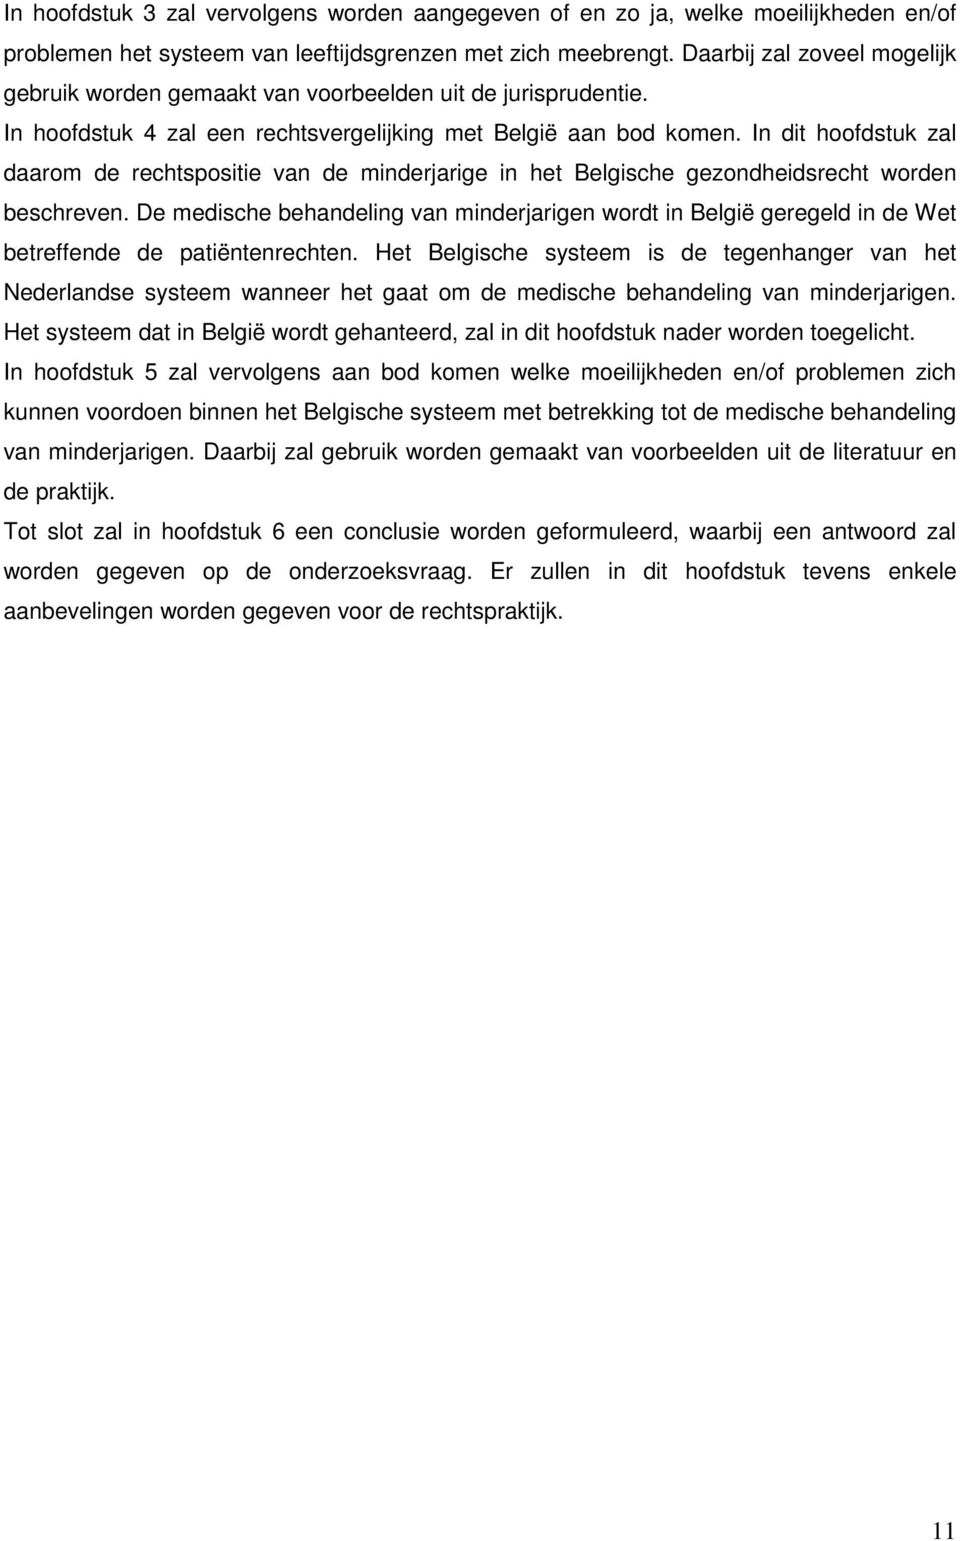 In dit hoofdstuk zal daarom de rechtspositie van de minderjarige in het Belgische gezondheidsrecht worden beschreven.